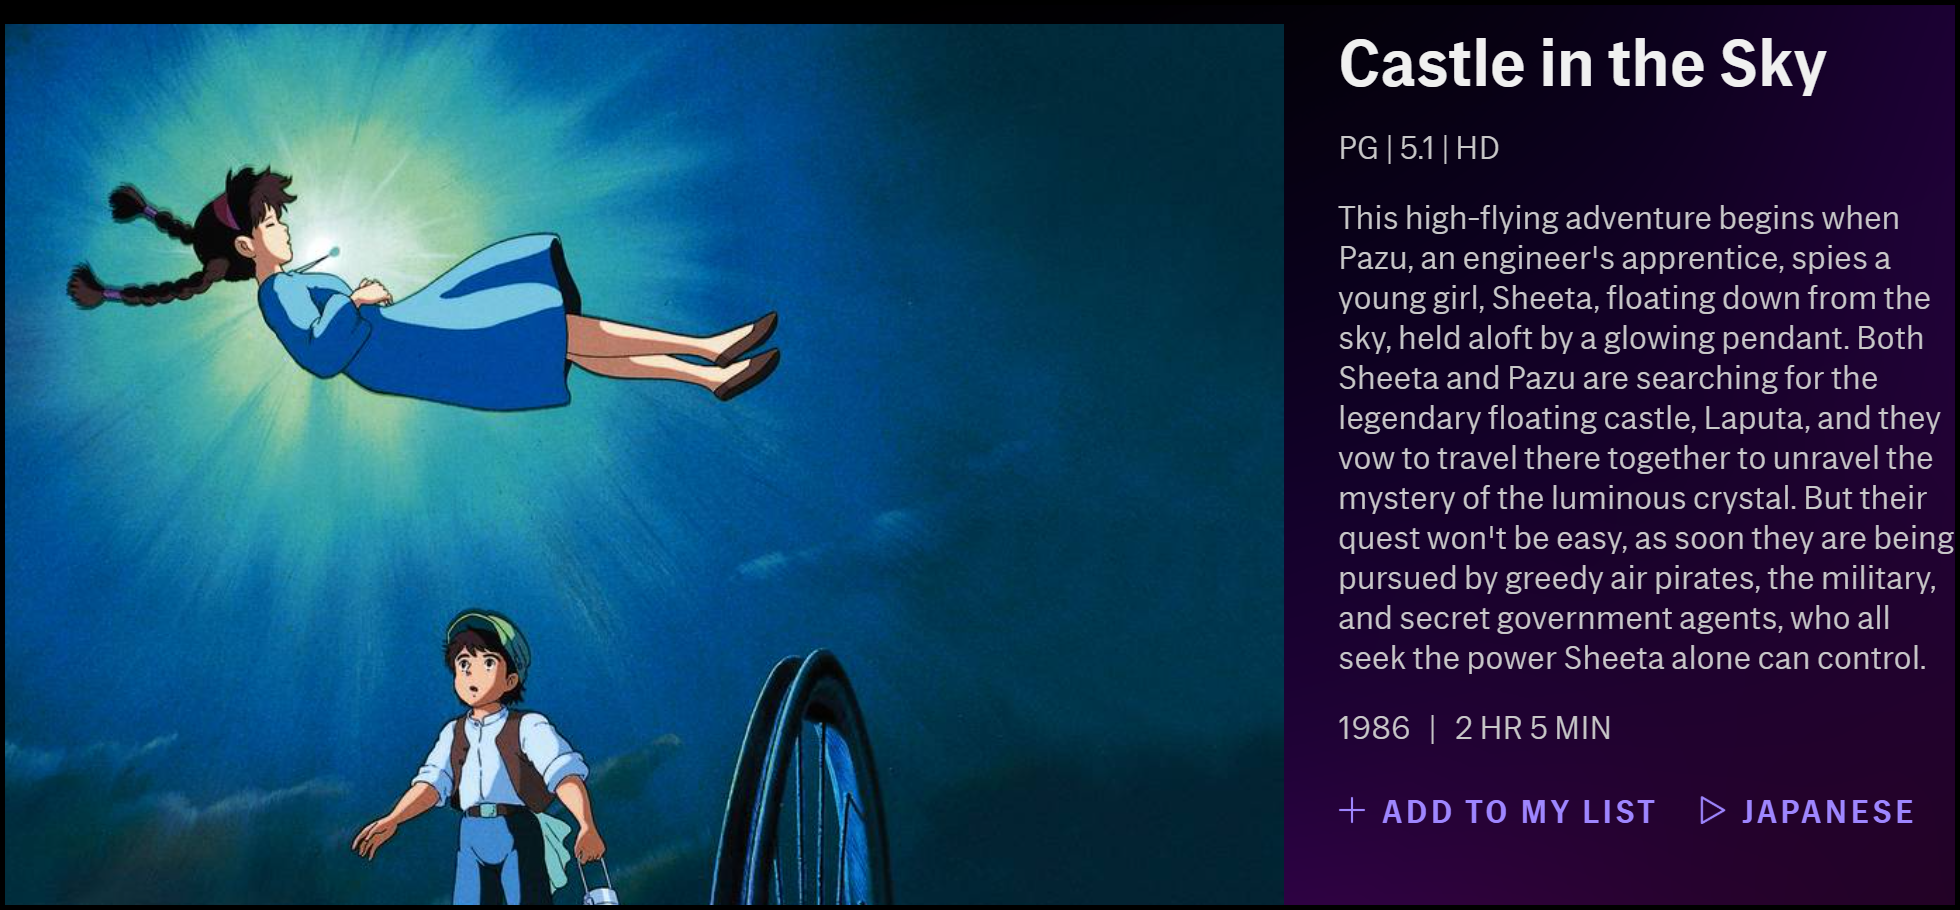 La description de "Chateau dans LE ciel" sur HBO Max.